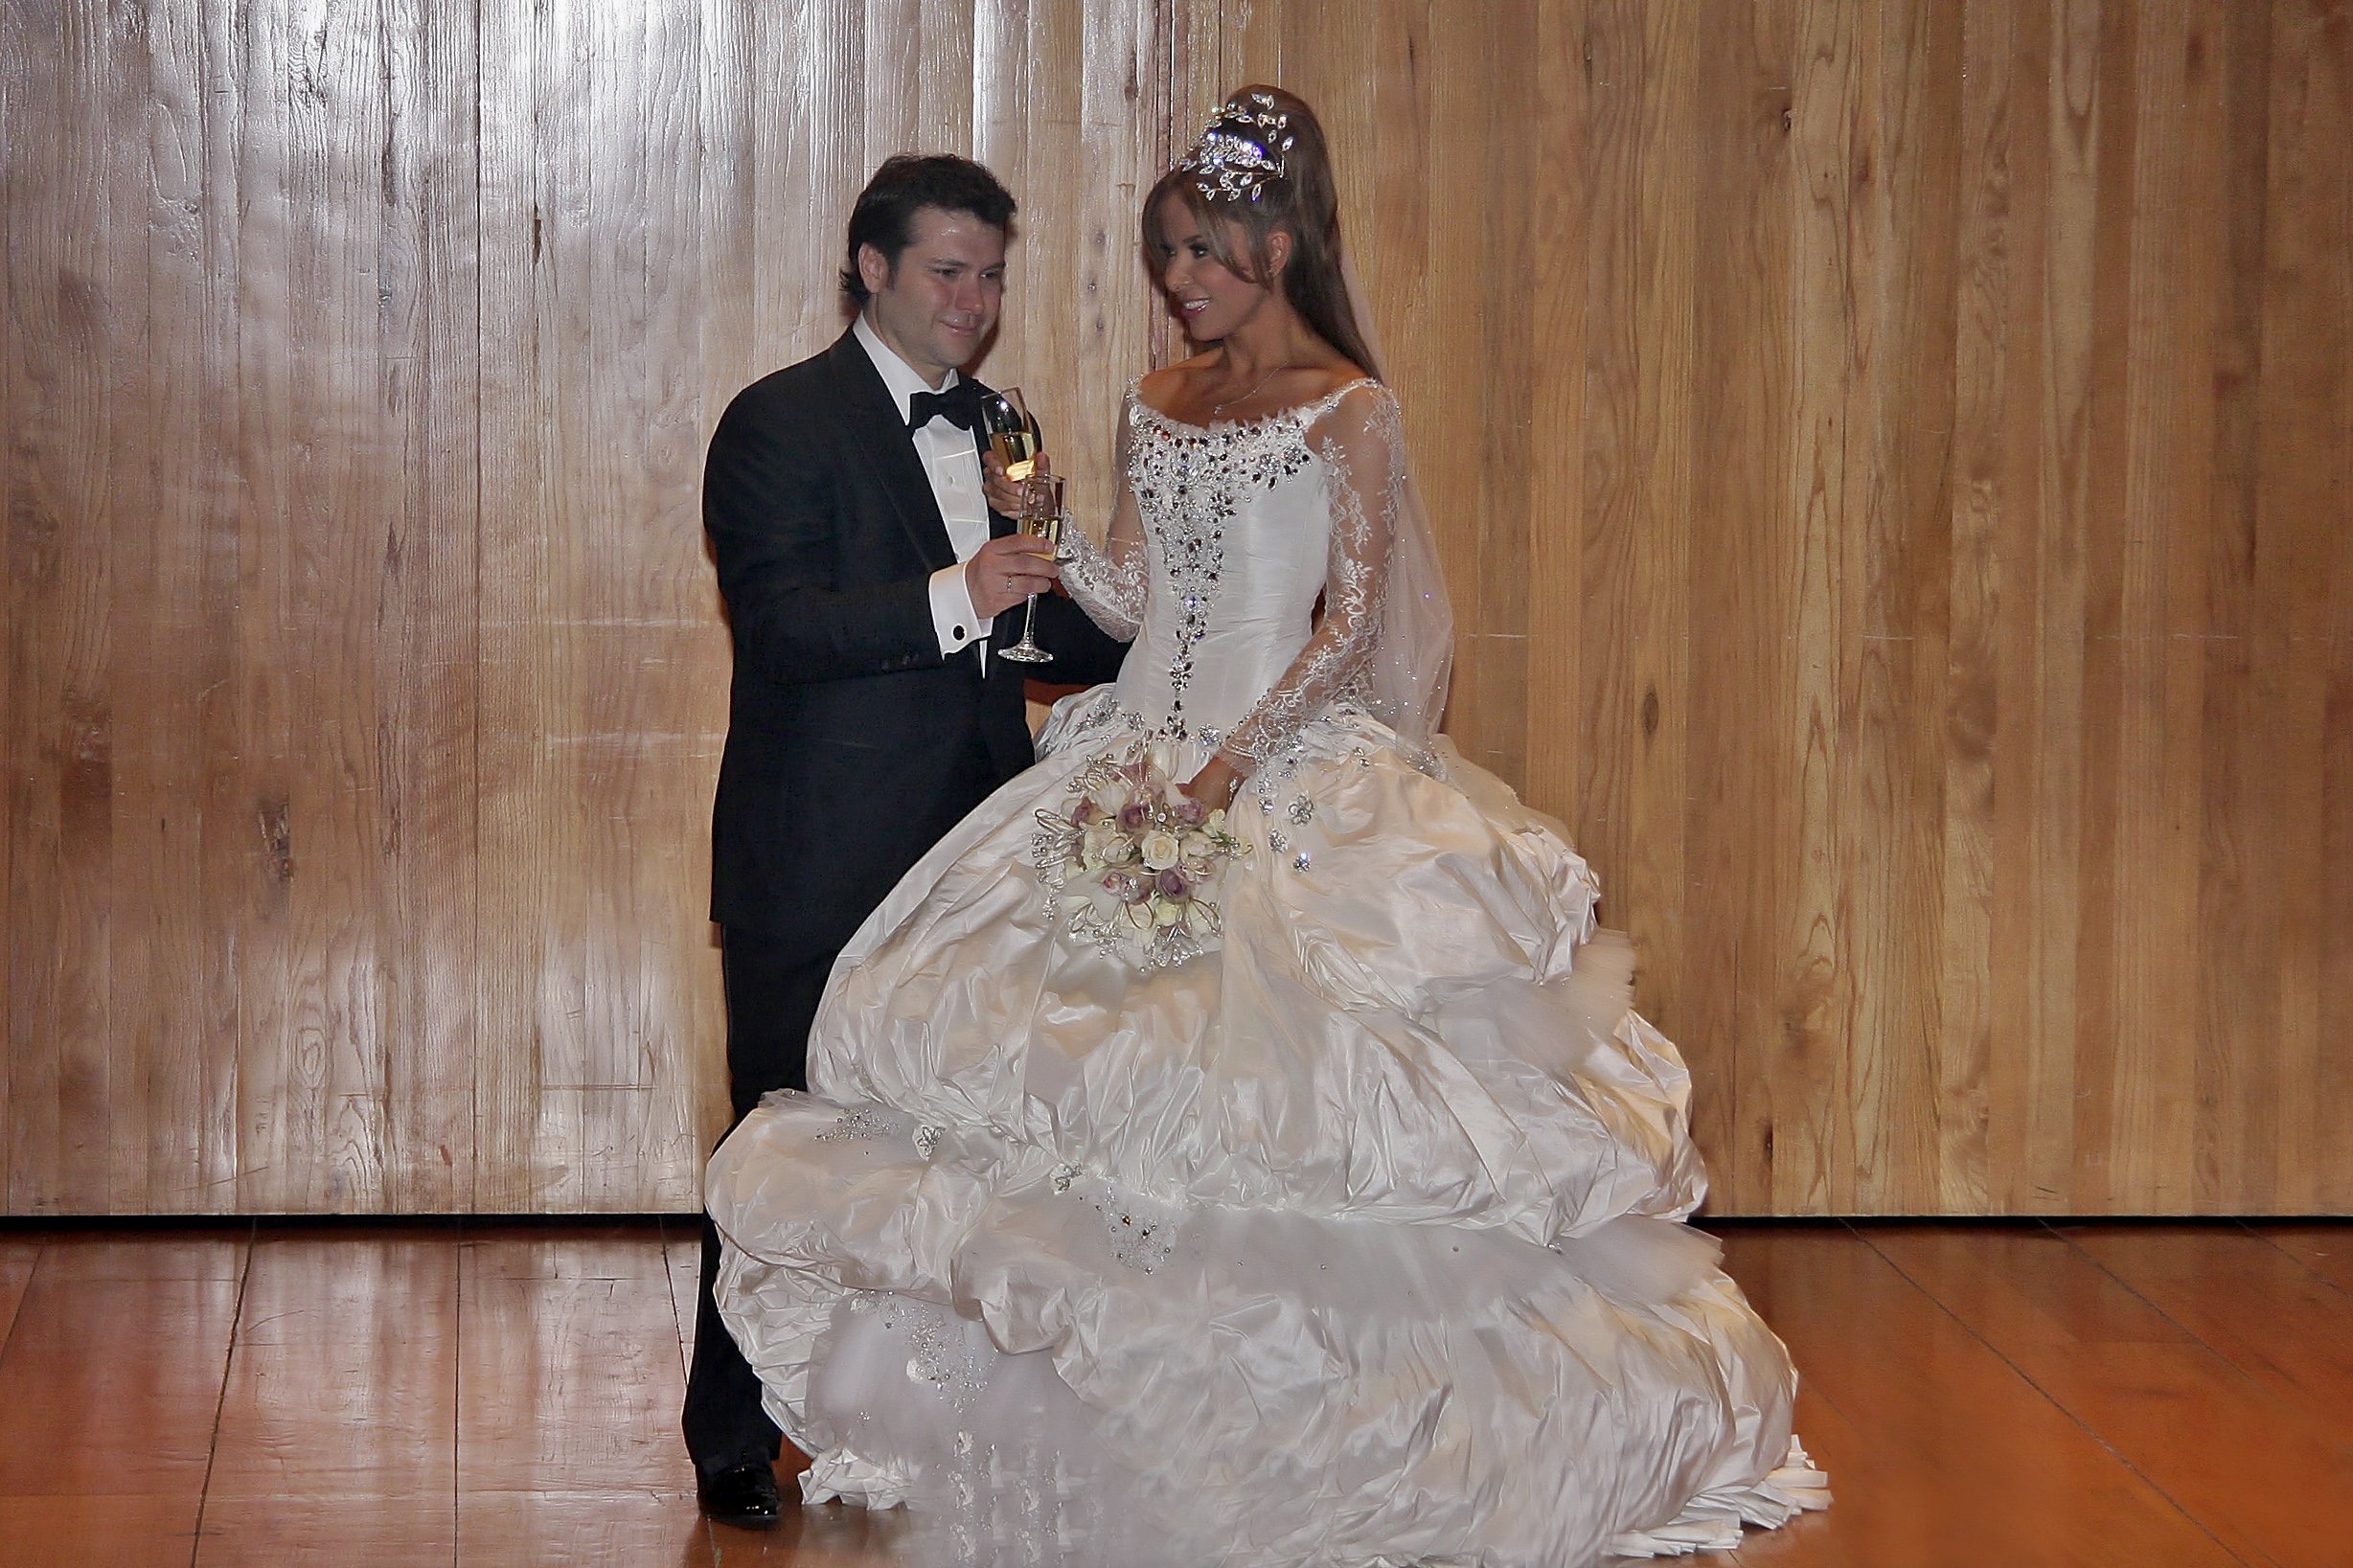 Gloria Trevi y Armando Gómez el día de su boda, el 17 de diciembre de 2009 en Monterrey, México. | Foto: Getty Images